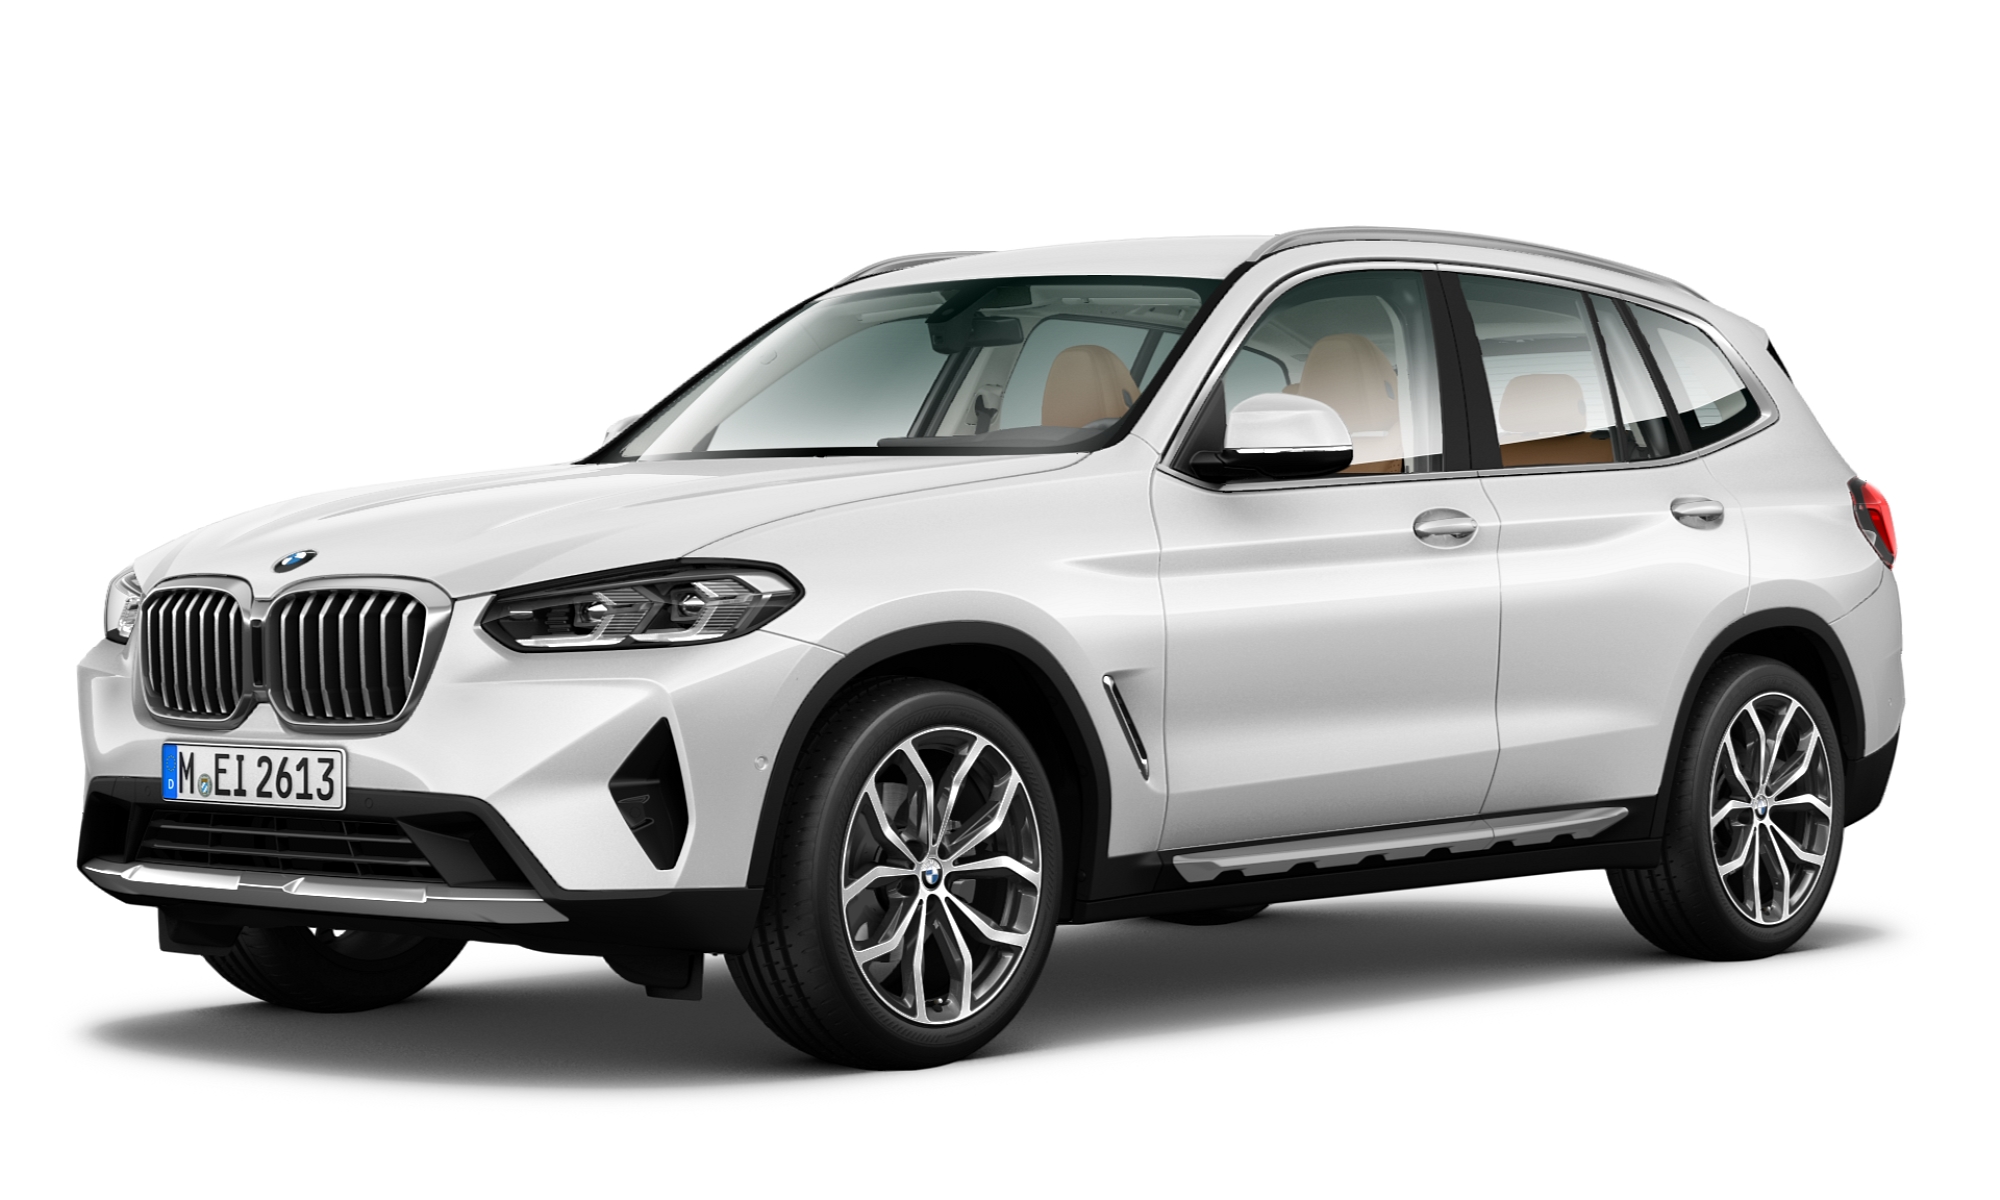 Compra un SUV BMW X3 SDRIVE20I nuevo en línea CrediAuto en Línea